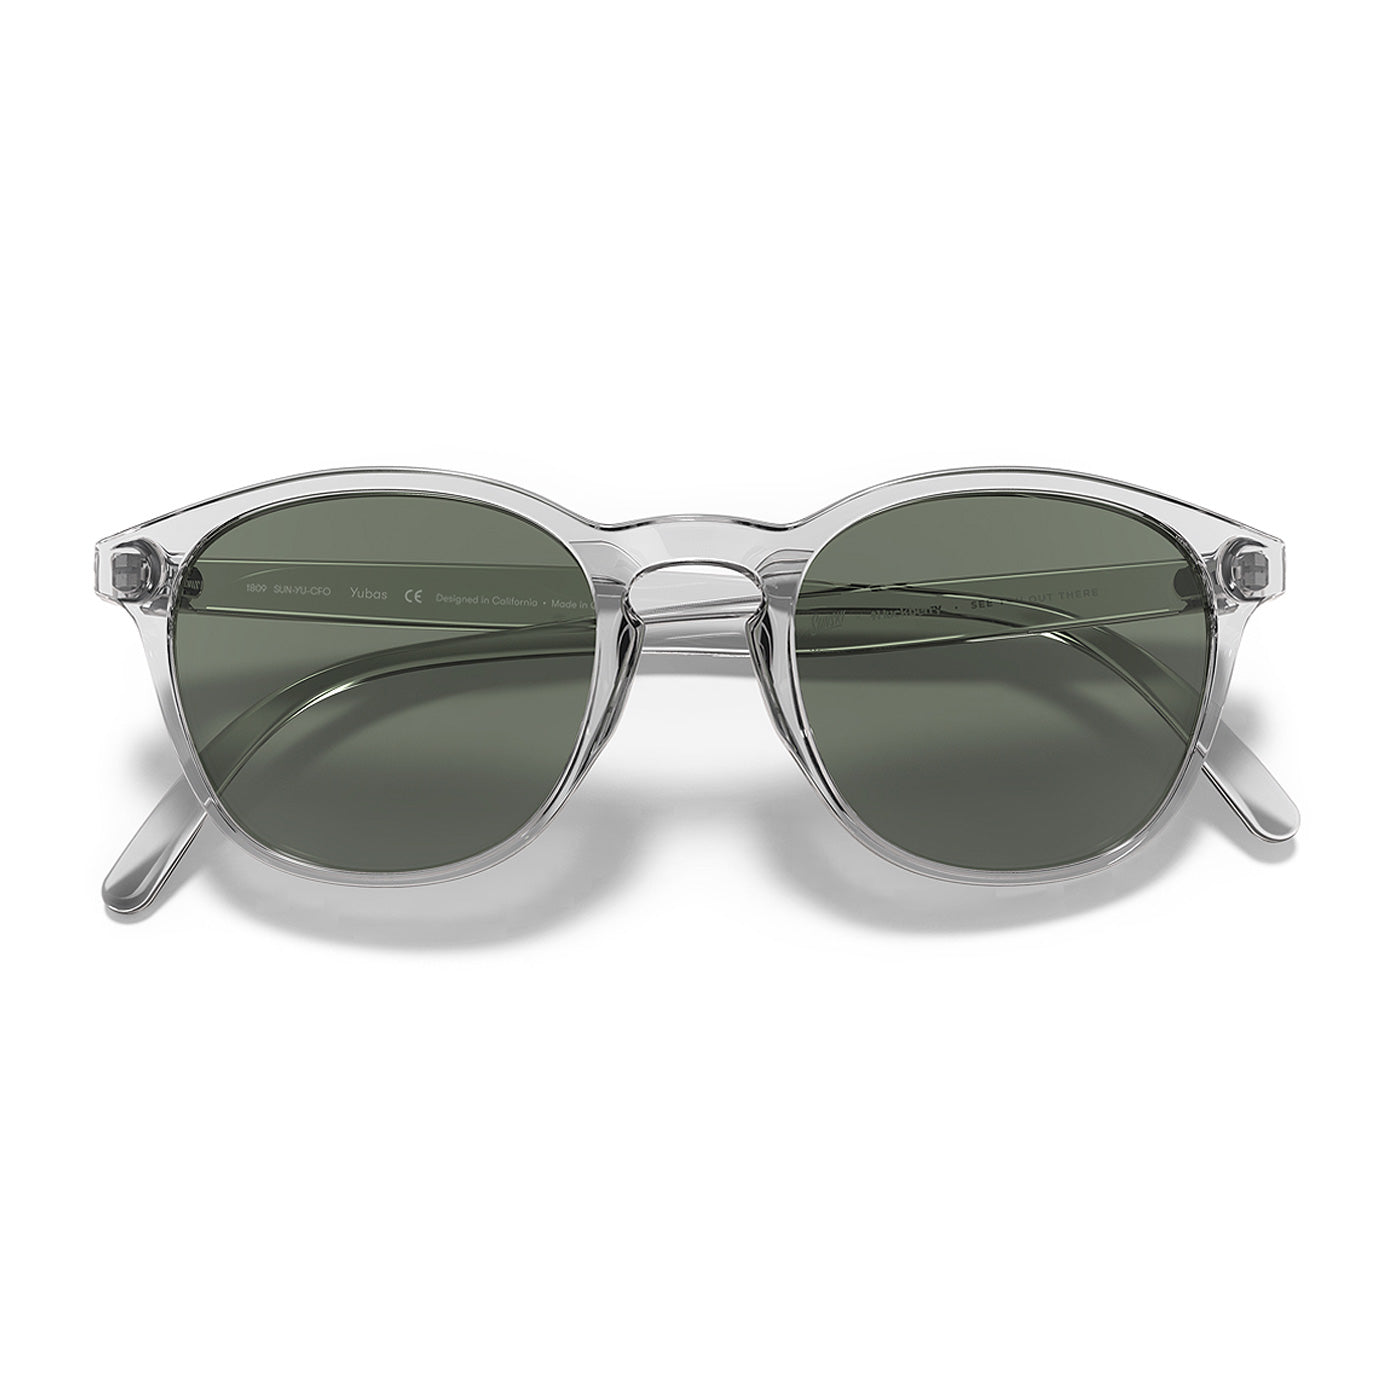 Yuba Clear sunglasses by Sunski